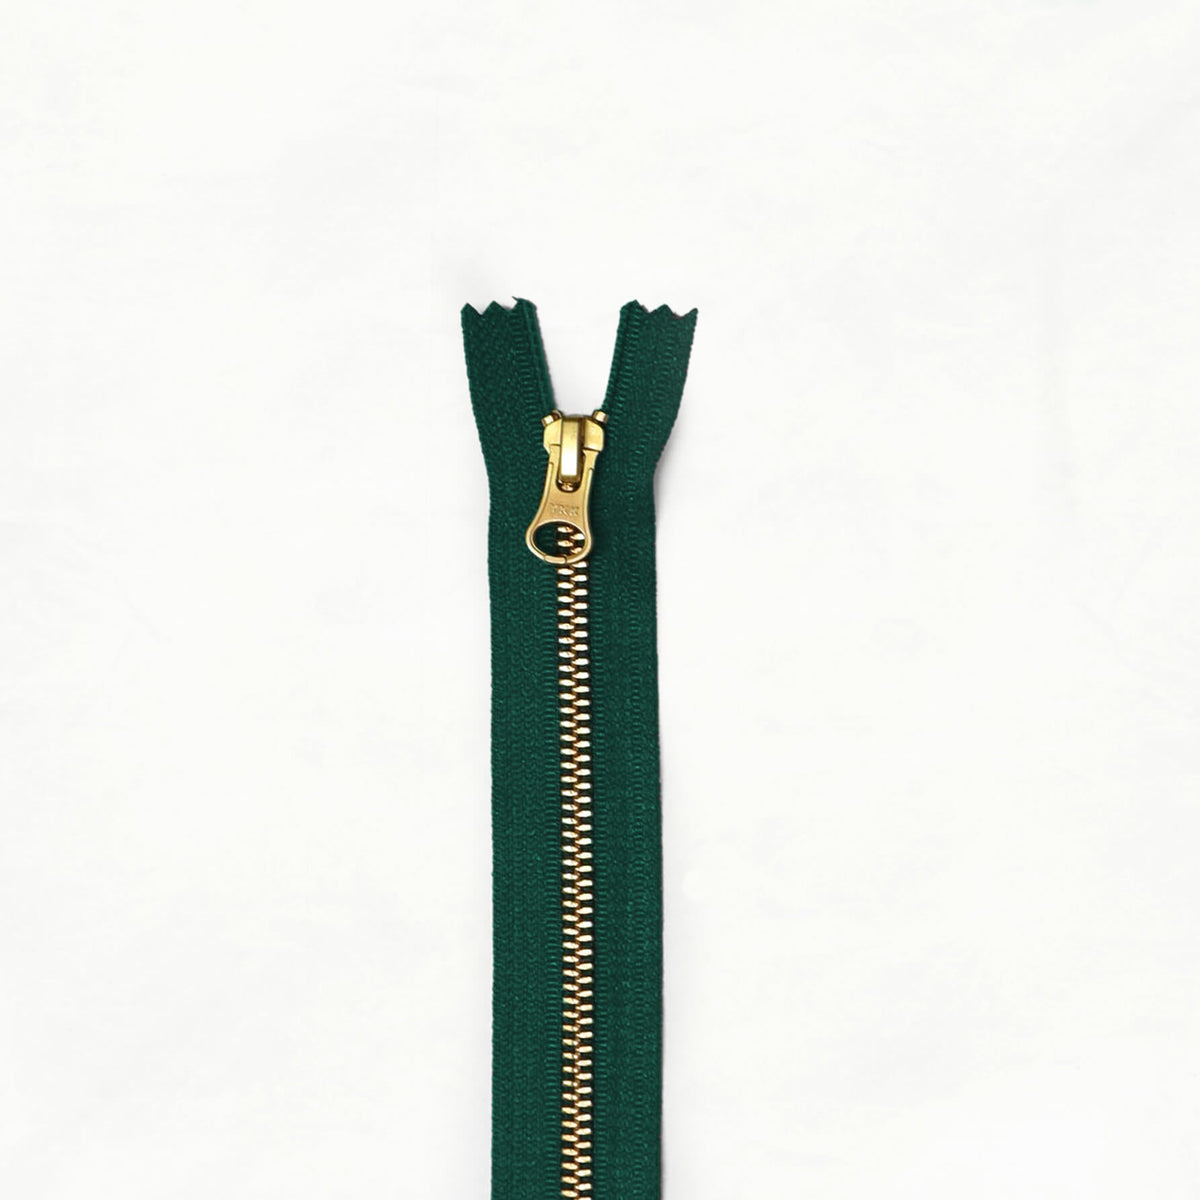 8" Brass Zippers - ZIP - 8 - SPRUCE - Zippers - Klum House